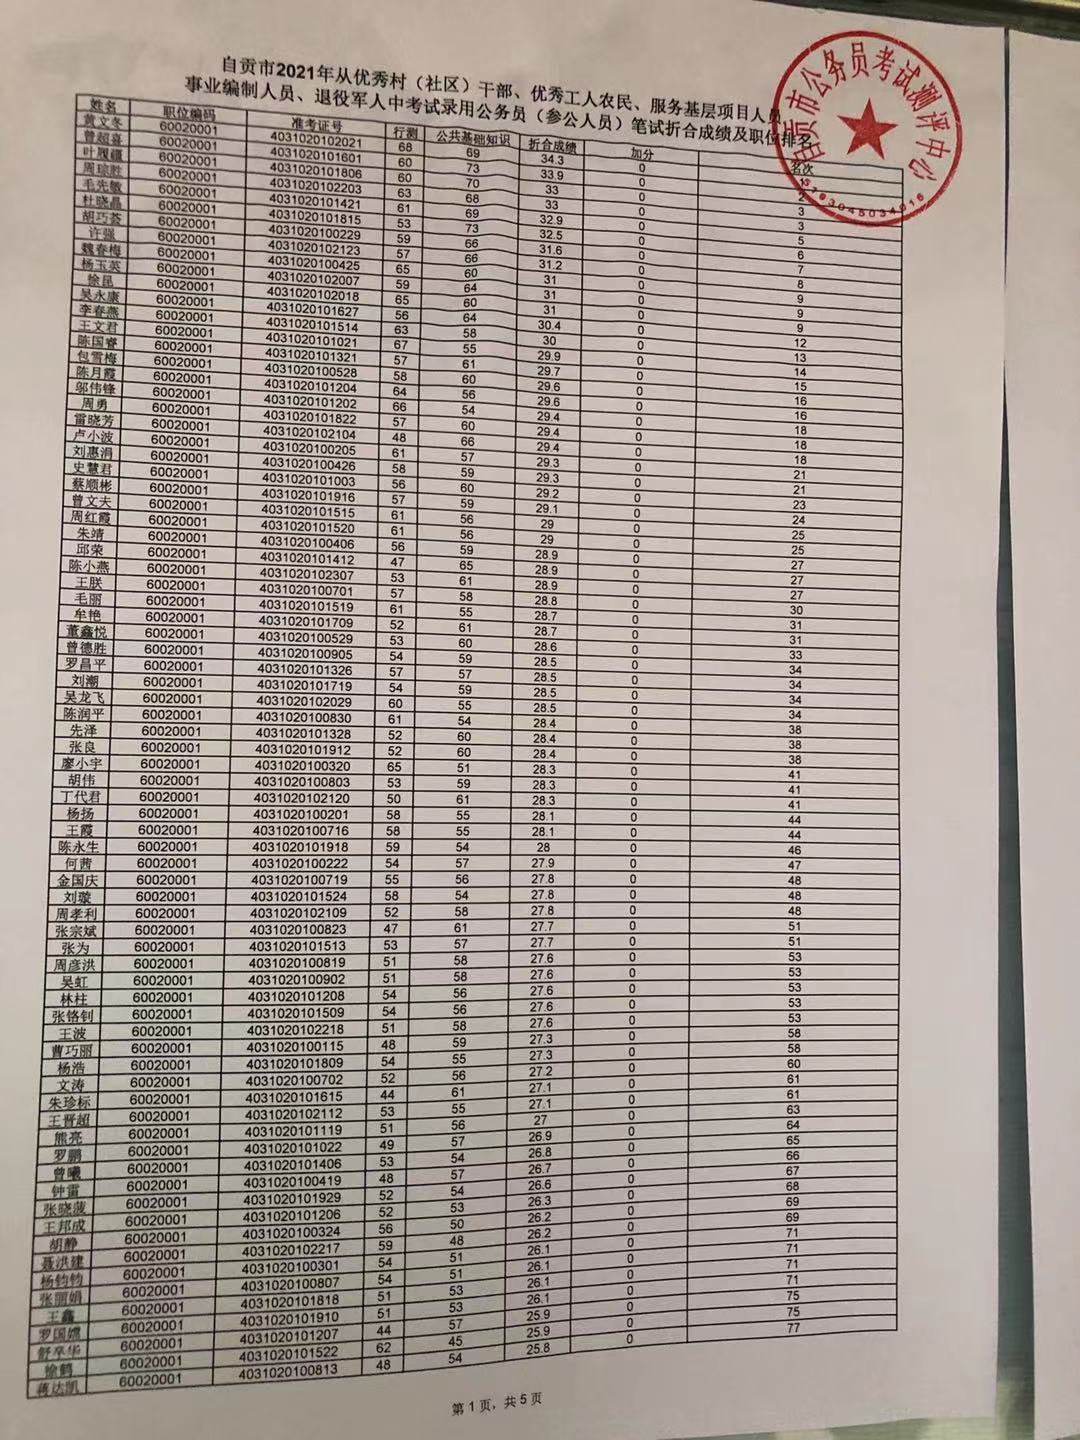 【官方教程】吉林省考公务员考试报名照片要求及上传制作 - 专技资格证件照要求 - 报名电子照助手